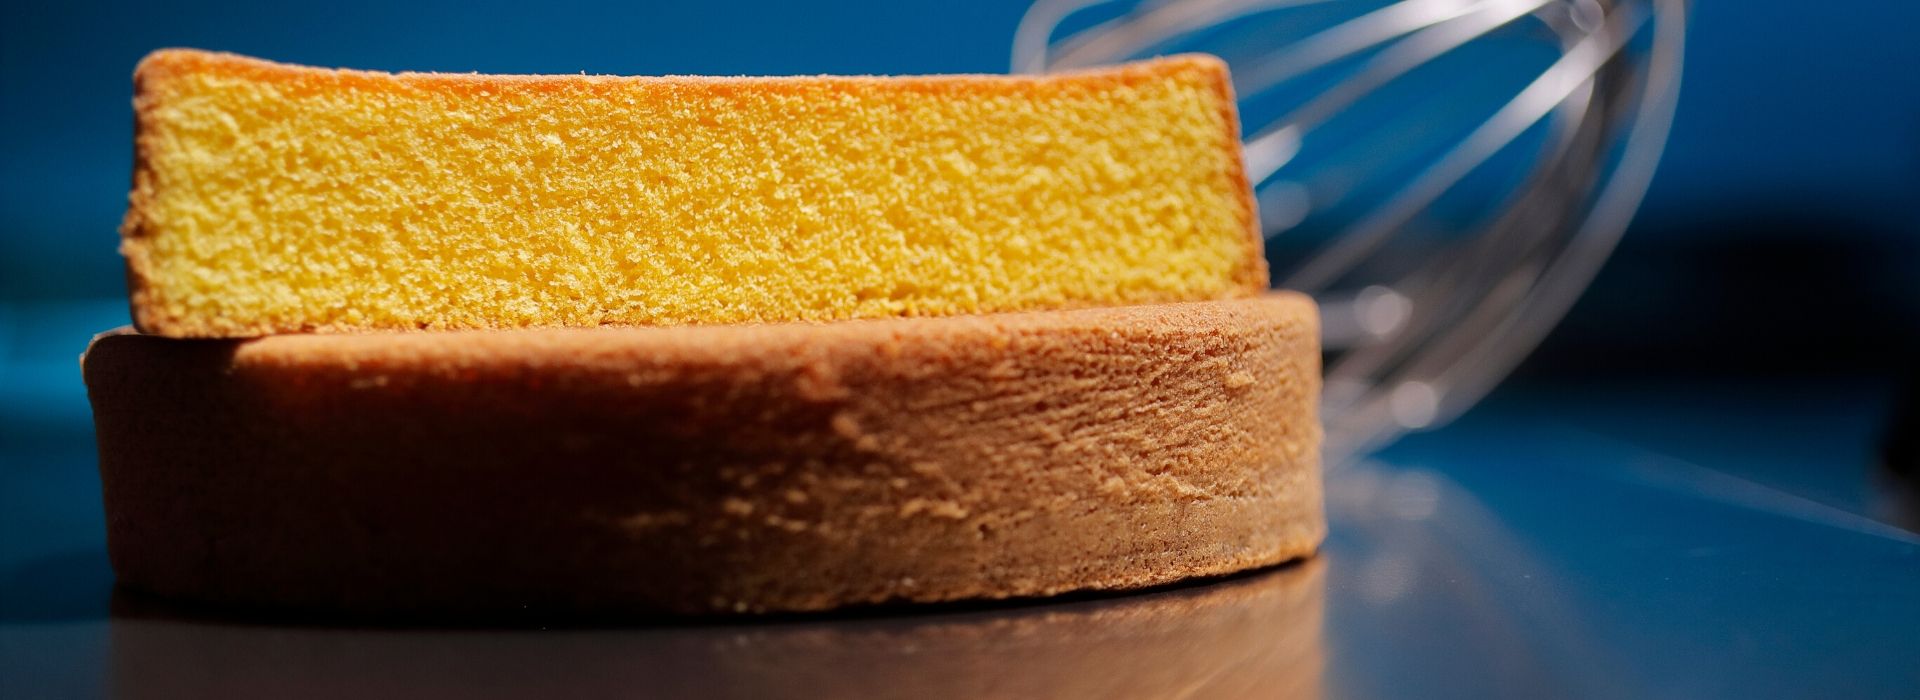 Pan di Spagna (Biscuit Sponge) - Baran Bakery